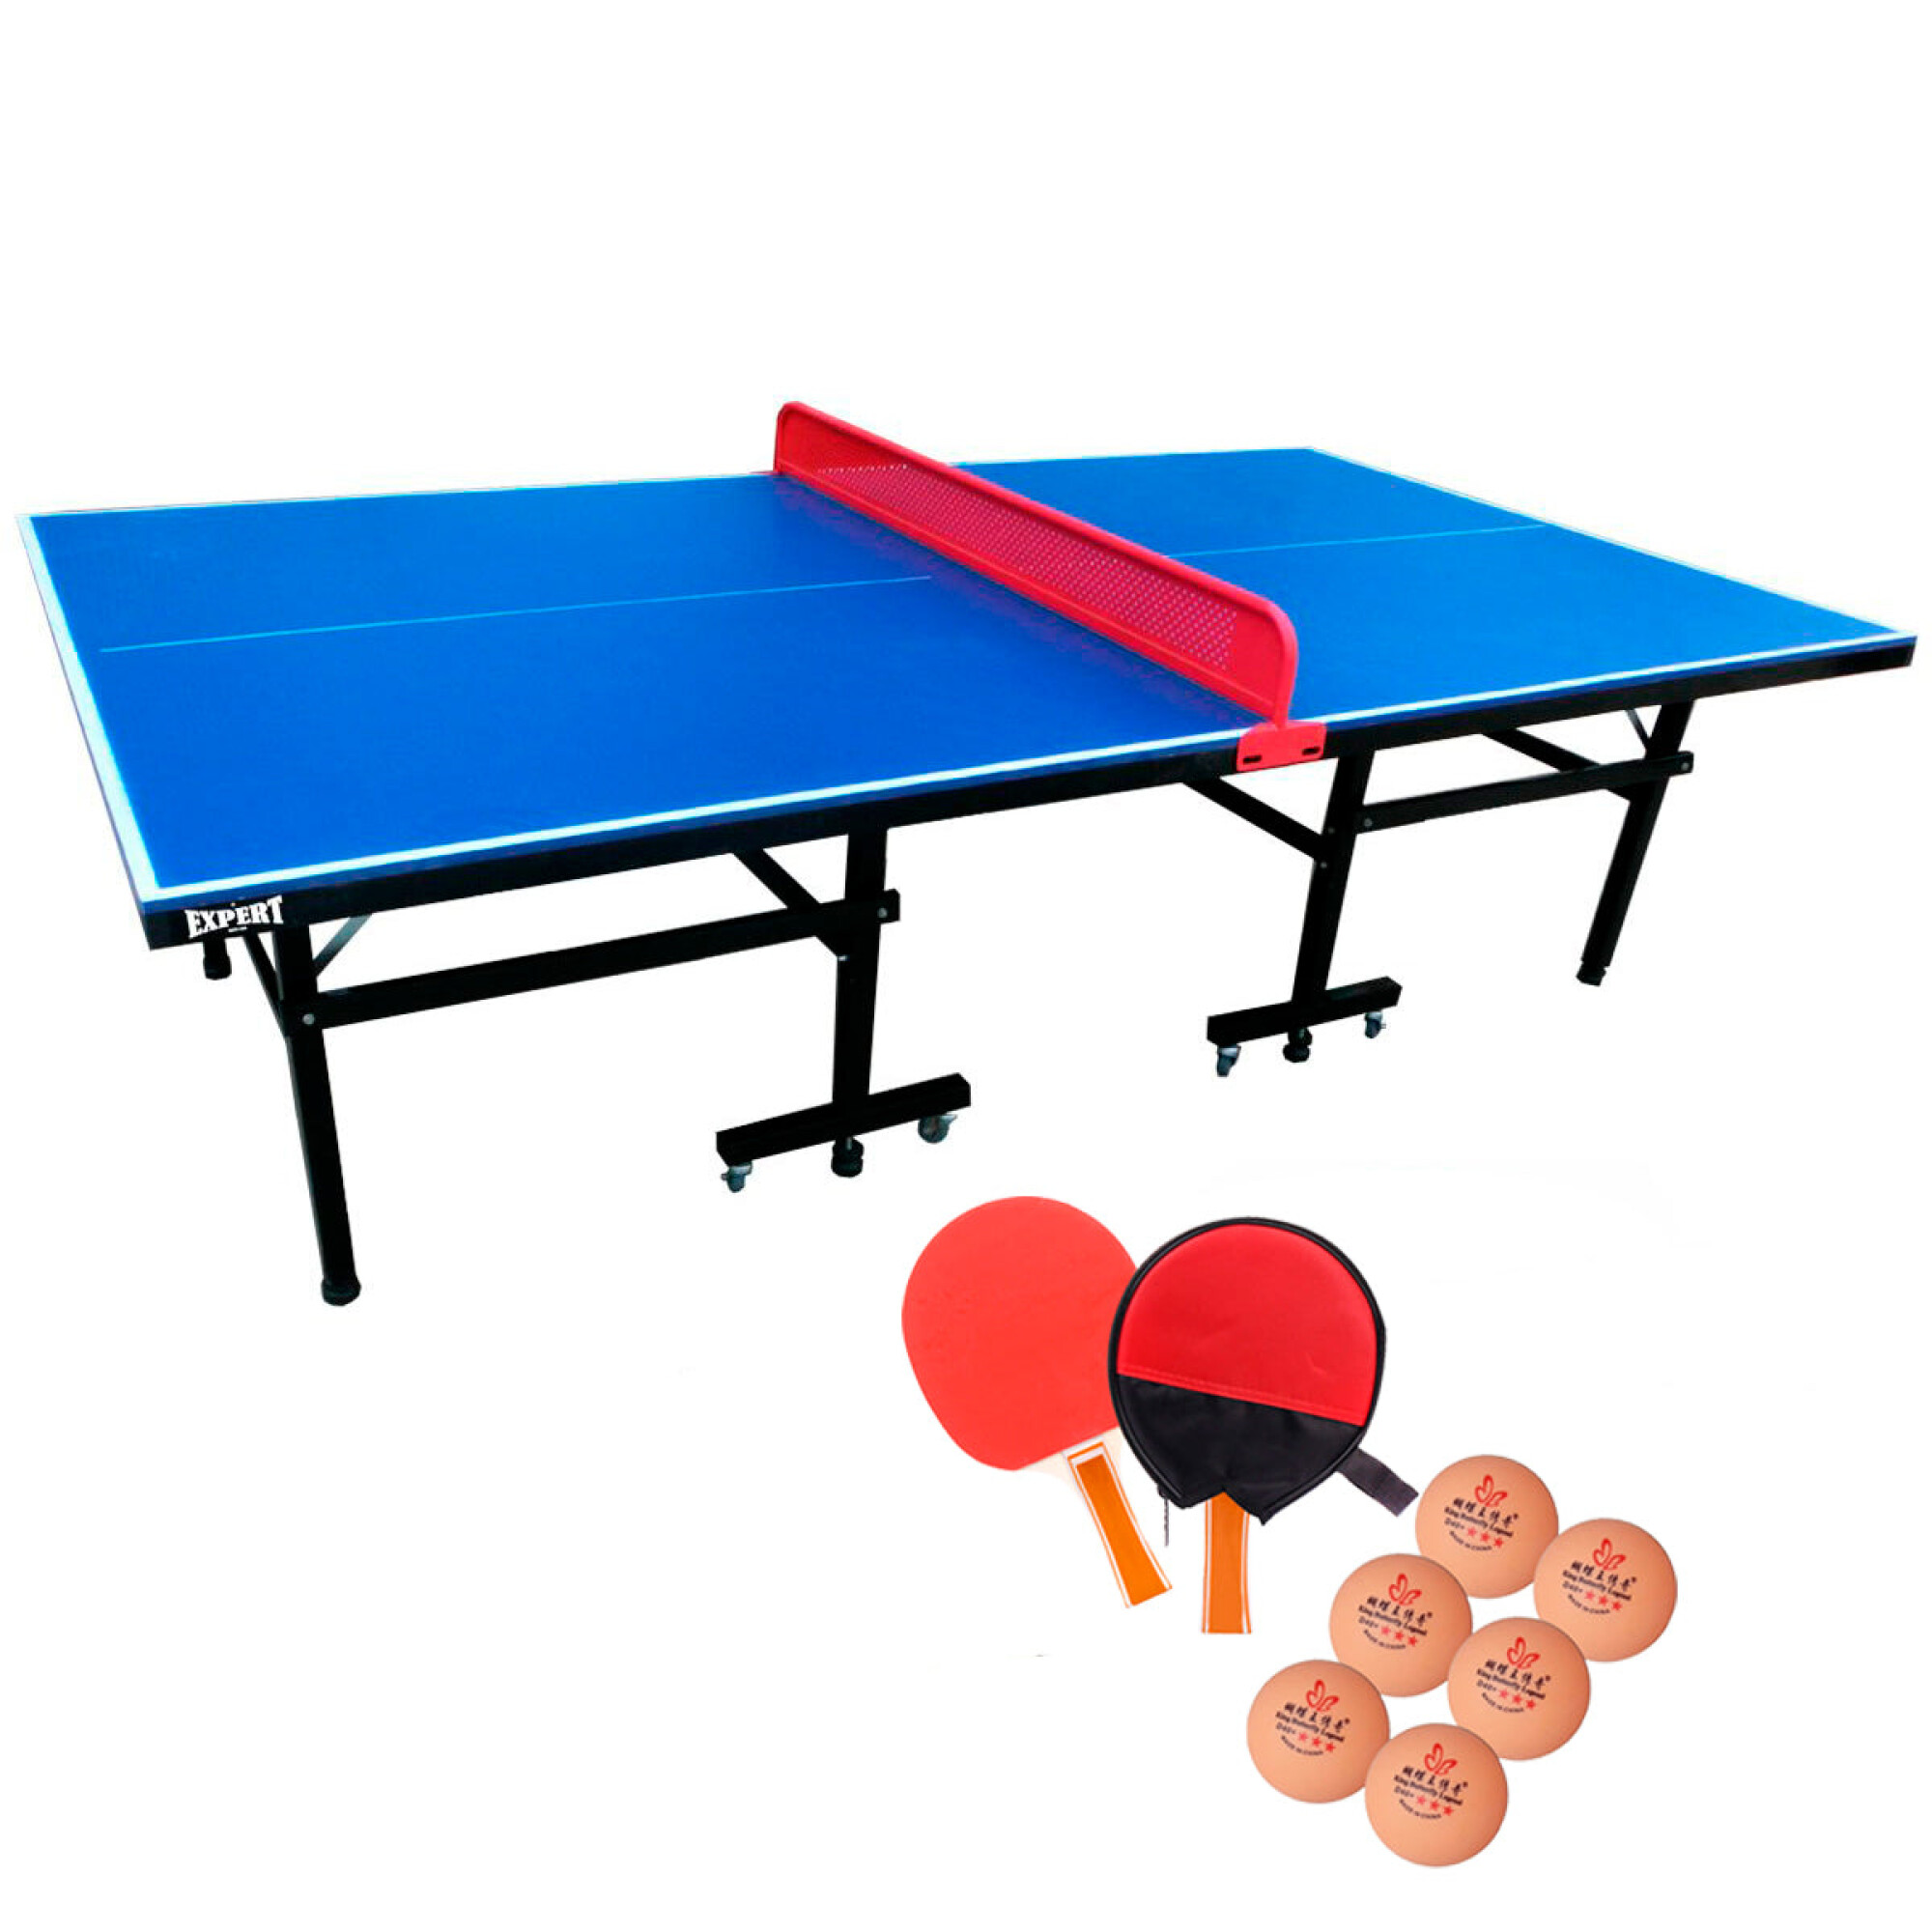 Seis mesas de ping pong plegables y de distintos tamaños